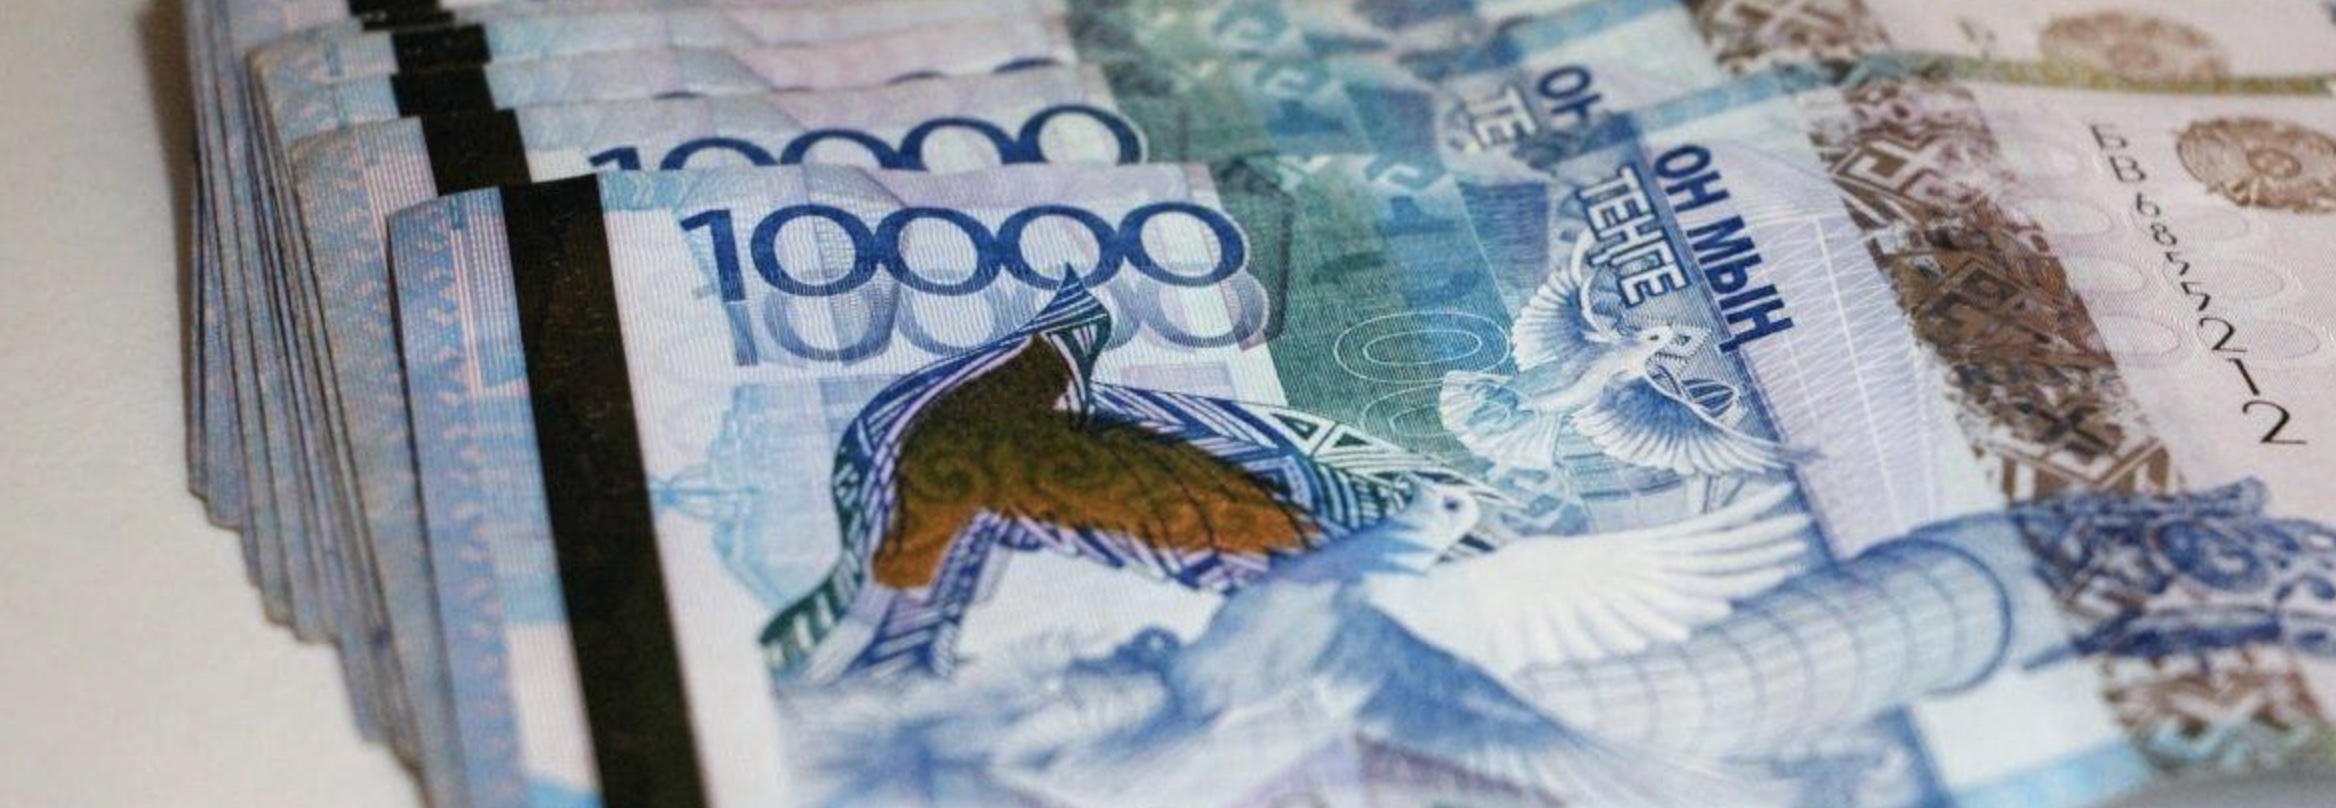 Казахстанцы страдают от ультранизкой доходности пенсионных накоплений — экономисты